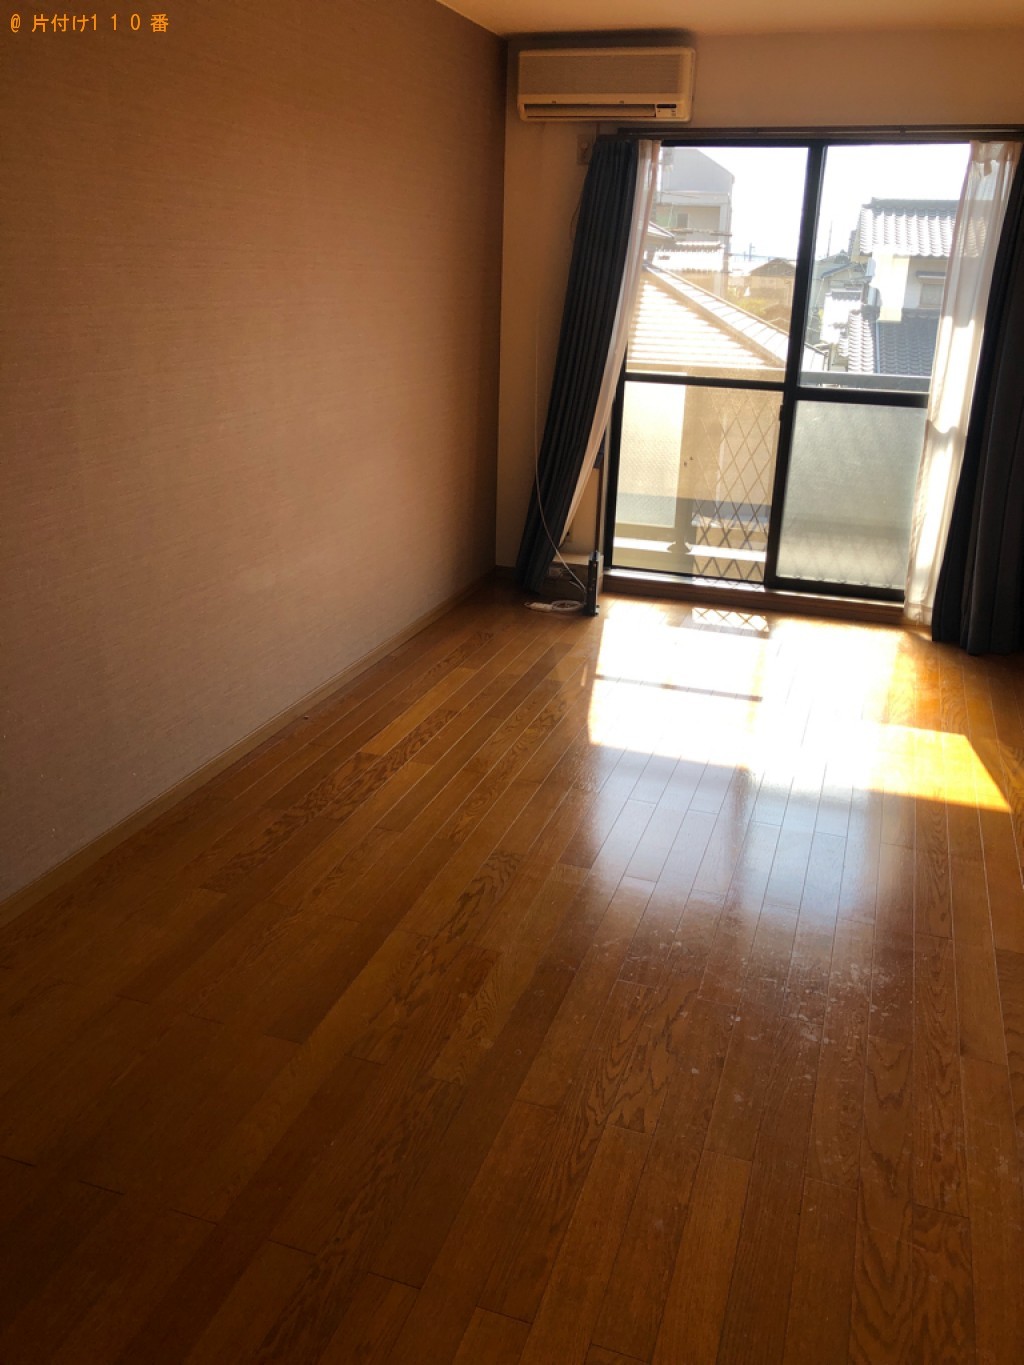 【熊本市】ソファー、ポールハンガー、椅子、家具、一般ごみ等